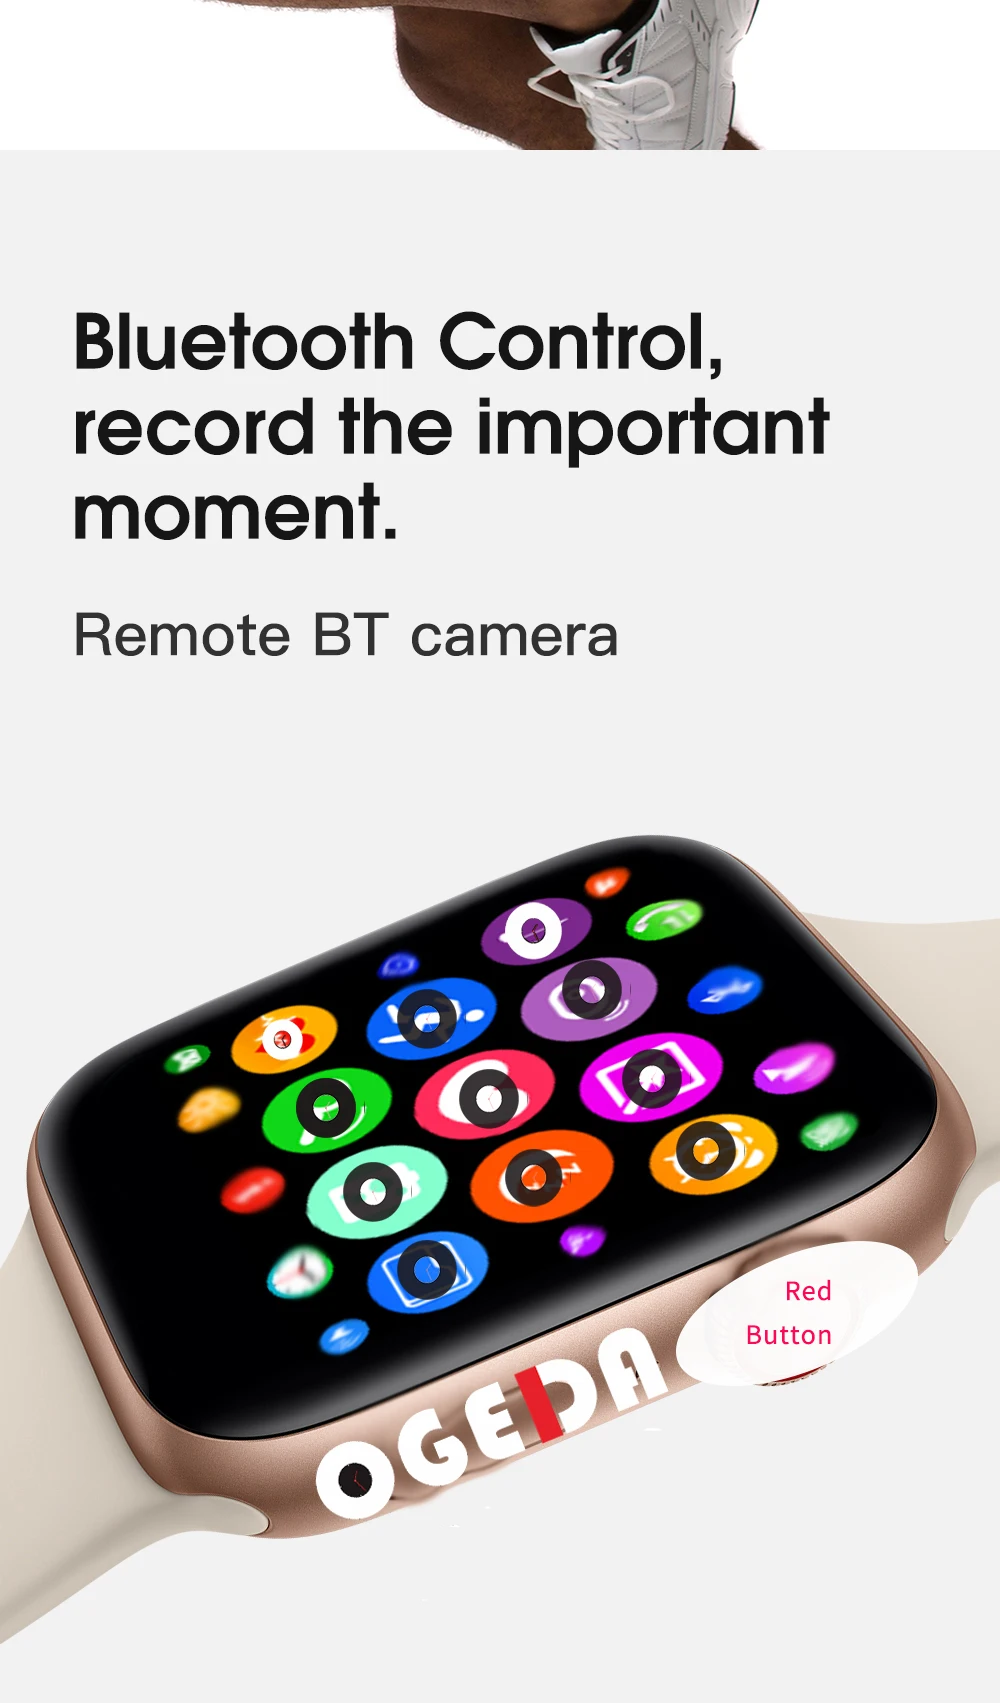 Смарт-часы серии 4 Смарт-часы чехол для Apple IPhone Android смарт-телефон монитор сердечного ритма педометр(красная кнопка) IWO8/W54